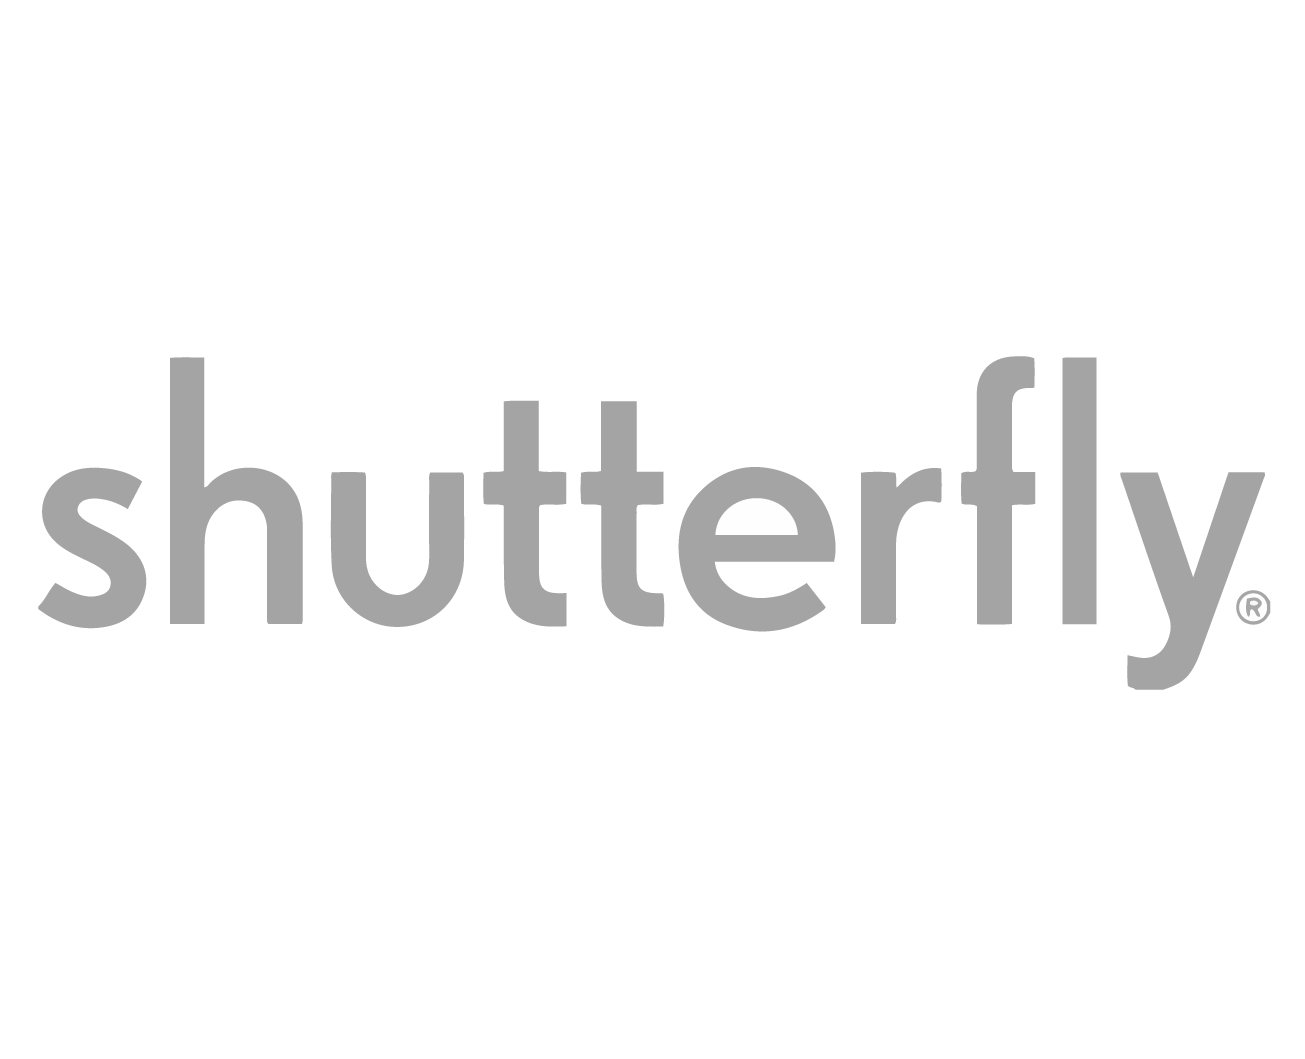 Shutterfly Logo - Shutterfly Logos